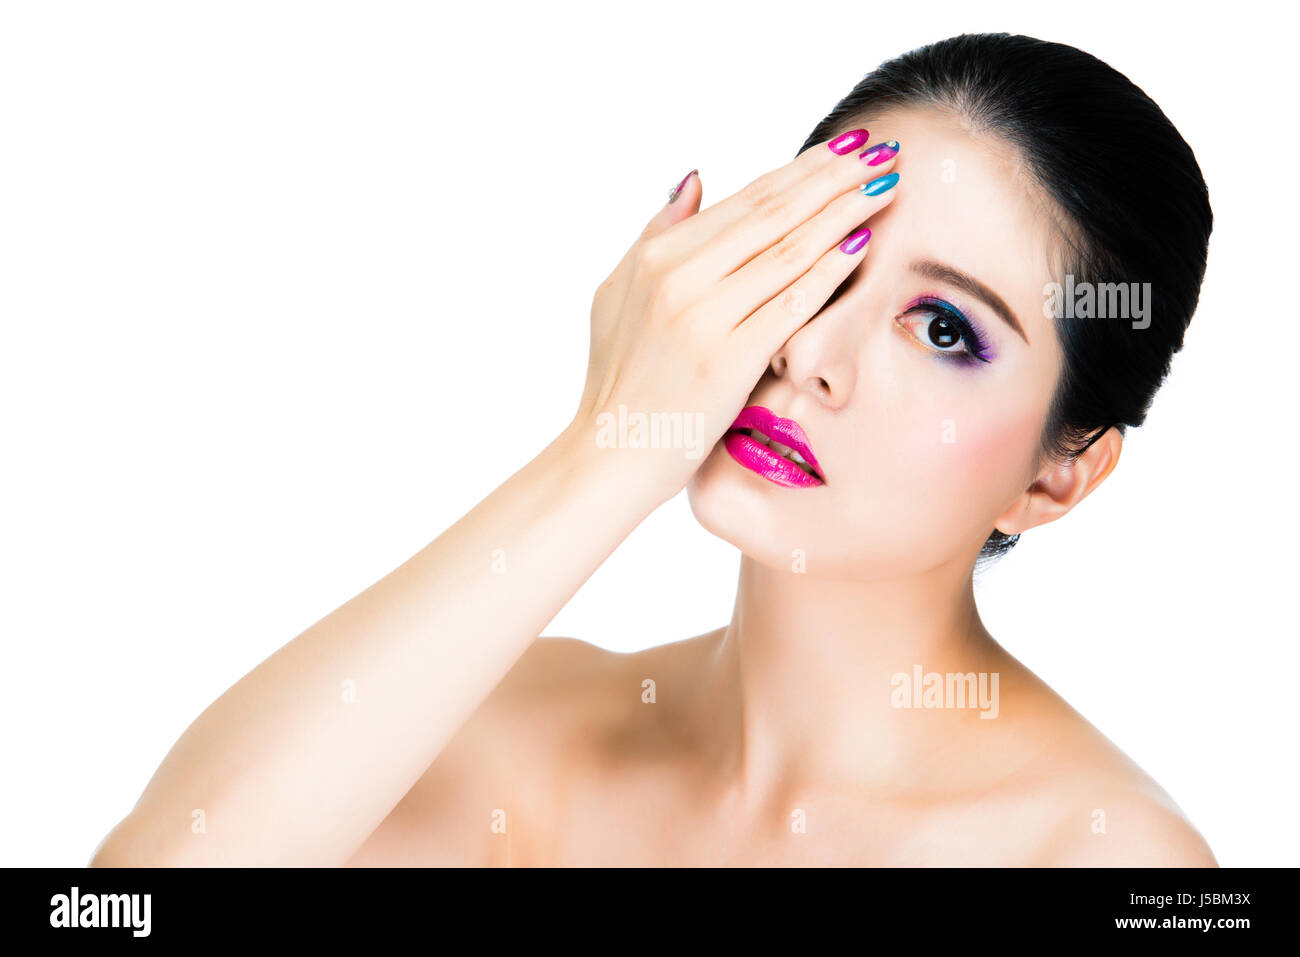 schöne asiatische Frau Make-up mit rosa Lippenstift und Regenbogen Maniküre  gemalt. veränderbare Mädchen Modell einerseits Abdeckung Auge Vogue Gesicht  zeigen Stockfotografie - Alamy